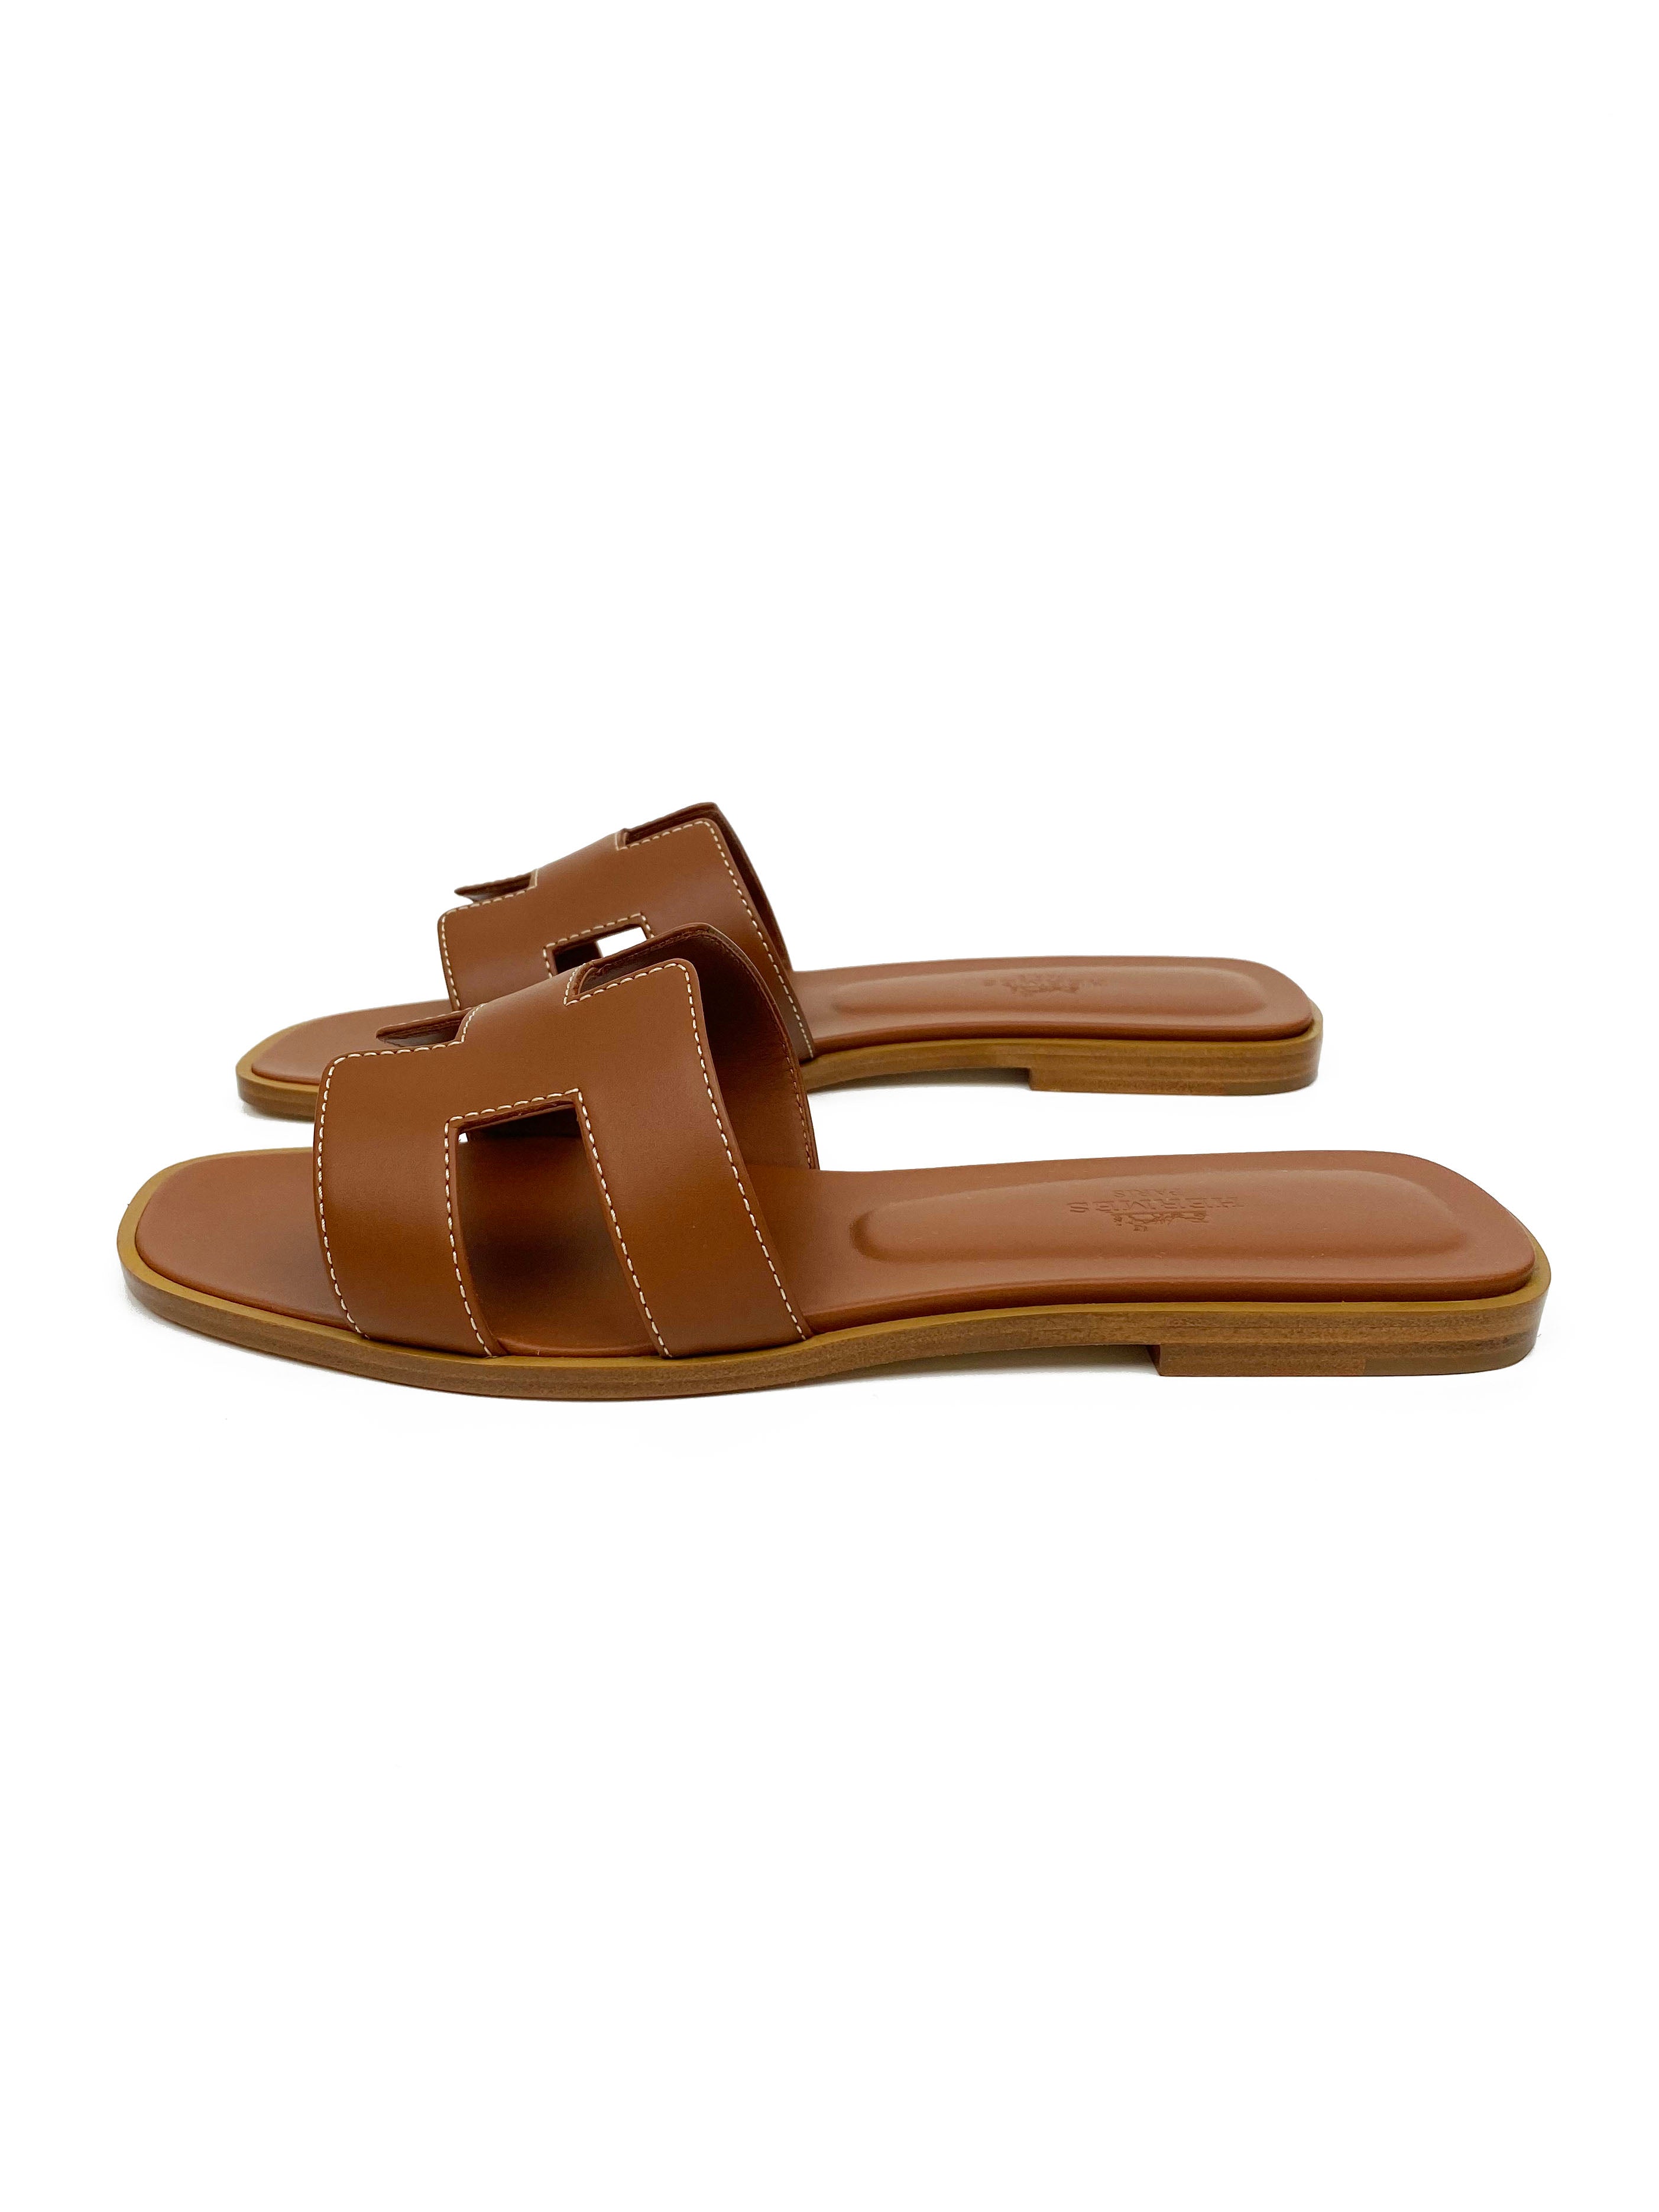 Hermes Gold Oran Sandals 38